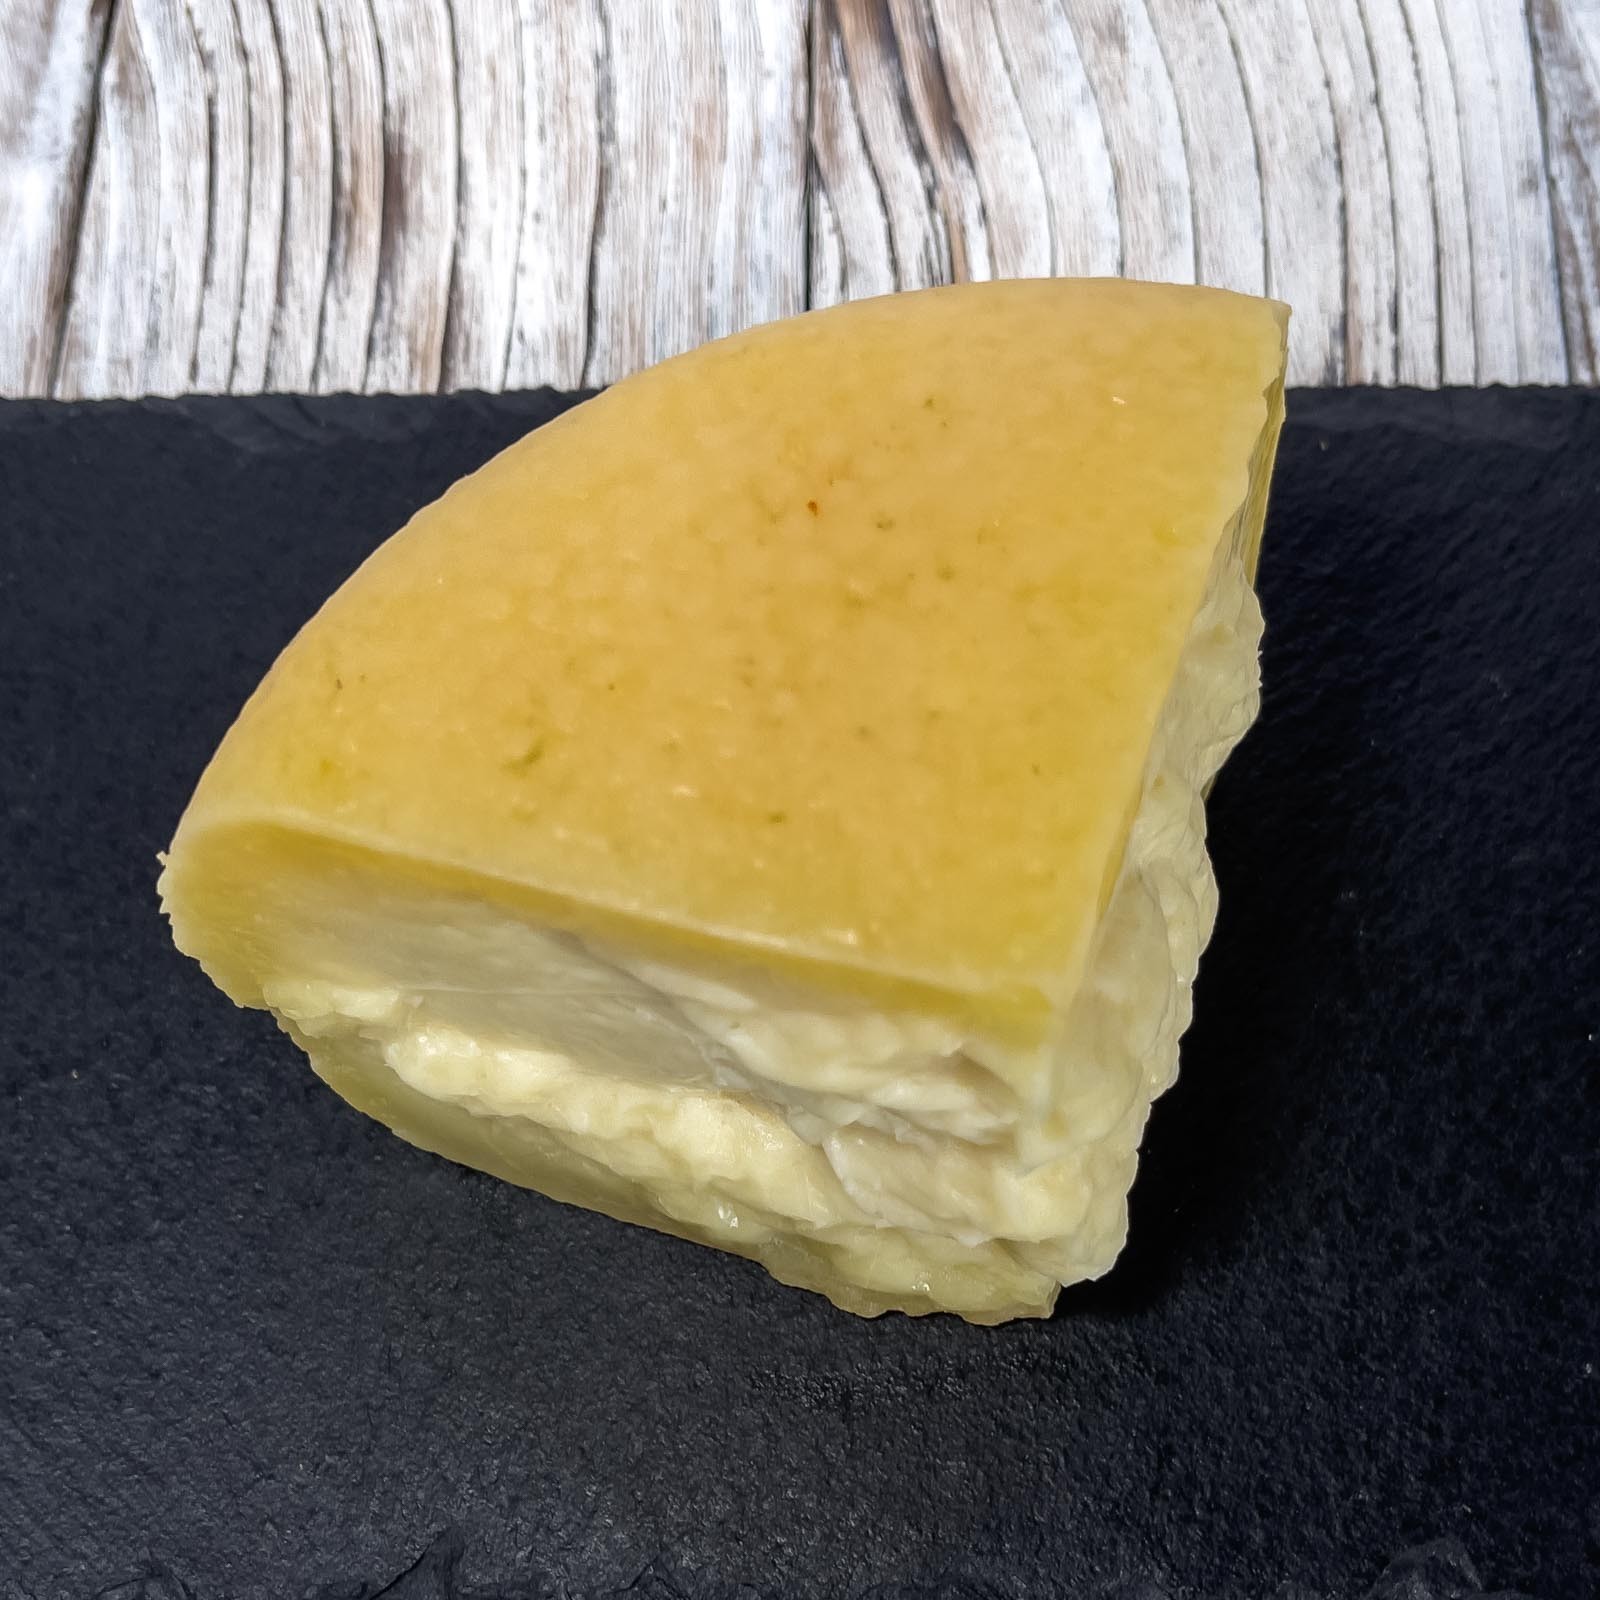 „Crosta D'Oro” Gereifter Pecorino-Käse ist ein typisches Produkt der toskanischen Handwerksküche, das sich durch eine dicke goldene Kruste und ein intensives und einhüllendes Aroma auszeichnet. Mindestens 150 Tage bis maximal 10 Monate gereift, erhält er einen kräftigen und leicht würzigen Geschmack. Die Paste ist kompakt und leicht löslich, wodurch sie perfekt zum Würzen oder Begleiten von ersten und zweiten Gängen geeignet ist.